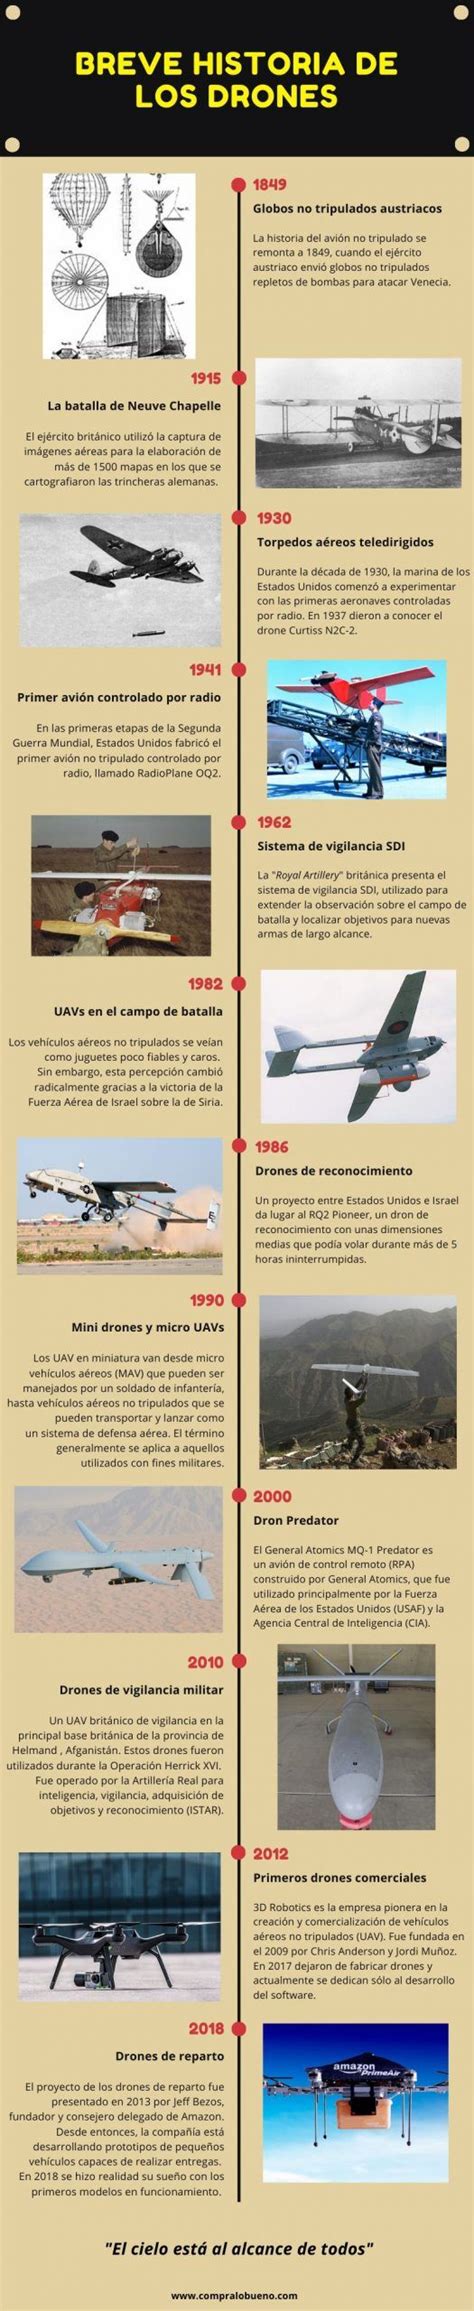 son los drones breve historia de los drones